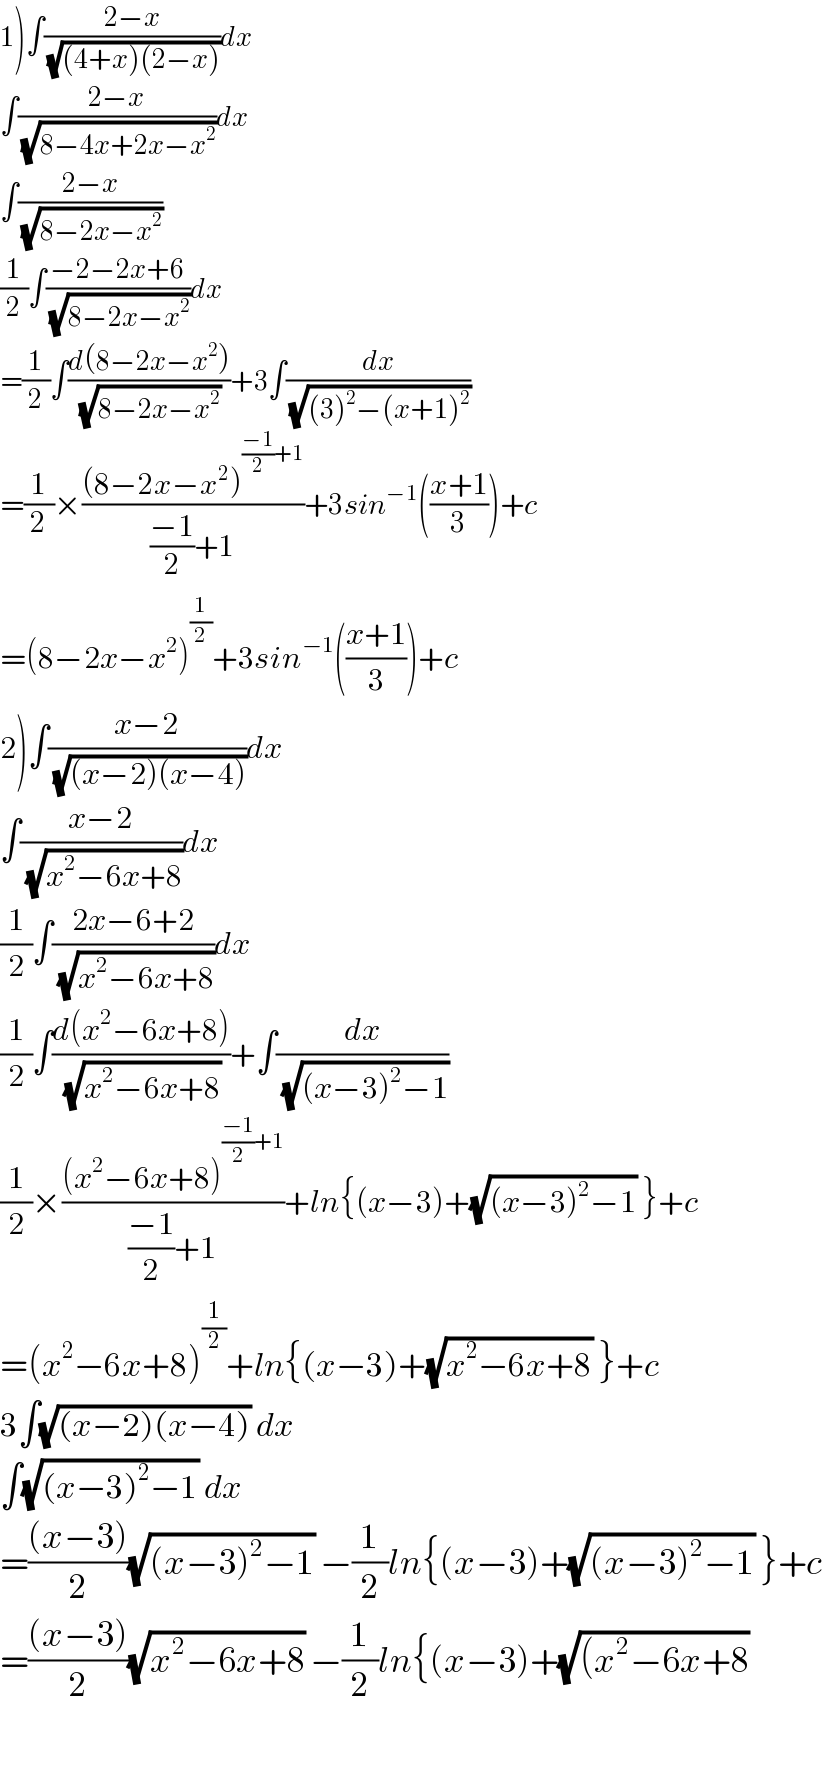 1)∫((2−x)/(√((4+x)(2−x))))dx  ∫((2−x)/(√(8−4x+2x−x^2 )))dx  ∫((2−x)/(√(8−2x−x^2 )))  (1/2)∫((−2−2x+6)/(√(8−2x−x^2 )))dx  =(1/2)∫((d(8−2x−x^2 ))/(√(8−2x−x^2 )))+3∫(dx/(√((3)^2 −(x+1)^2 )))  =(1/2)×(((8−2x−x^2 )^(((−1)/2)+1) )/(((−1)/2)+1))+3sin^(−1) (((x+1)/3))+c  =(8−2x−x^2 )^(1/2) +3sin^(−1) (((x+1)/3))+c  2)∫((x−2)/(√((x−2)(x−4))))dx  ∫((x−2)/(√(x^2 −6x+8)))dx  (1/2)∫((2x−6+2)/(√(x^2 −6x+8)))dx  (1/2)∫((d(x^2 −6x+8))/(√(x^2 −6x+8)))+∫(dx/(√((x−3)^2 −1)))  (1/2)×(((x^2 −6x+8)^(((−1)/2)+1) )/(((−1)/2)+1))+ln{(x−3)+(√((x−3)^2 −1)) }+c  =(x^2 −6x+8)^(1/2) +ln{(x−3)+(√(x^2 −6x+8)) }+c  3∫(√((x−2)(x−4))) dx  ∫(√((x−3)^2 −1)) dx  =(((x−3))/2)(√((x−3)^2 −1)) −(1/2)ln{(x−3)+(√((x−3)^2 −1)) }+c  =(((x−3))/2)(√(x^2 −6x+8)) −(1/2)ln{(x−3)+(√((x^2 −6x+8))    